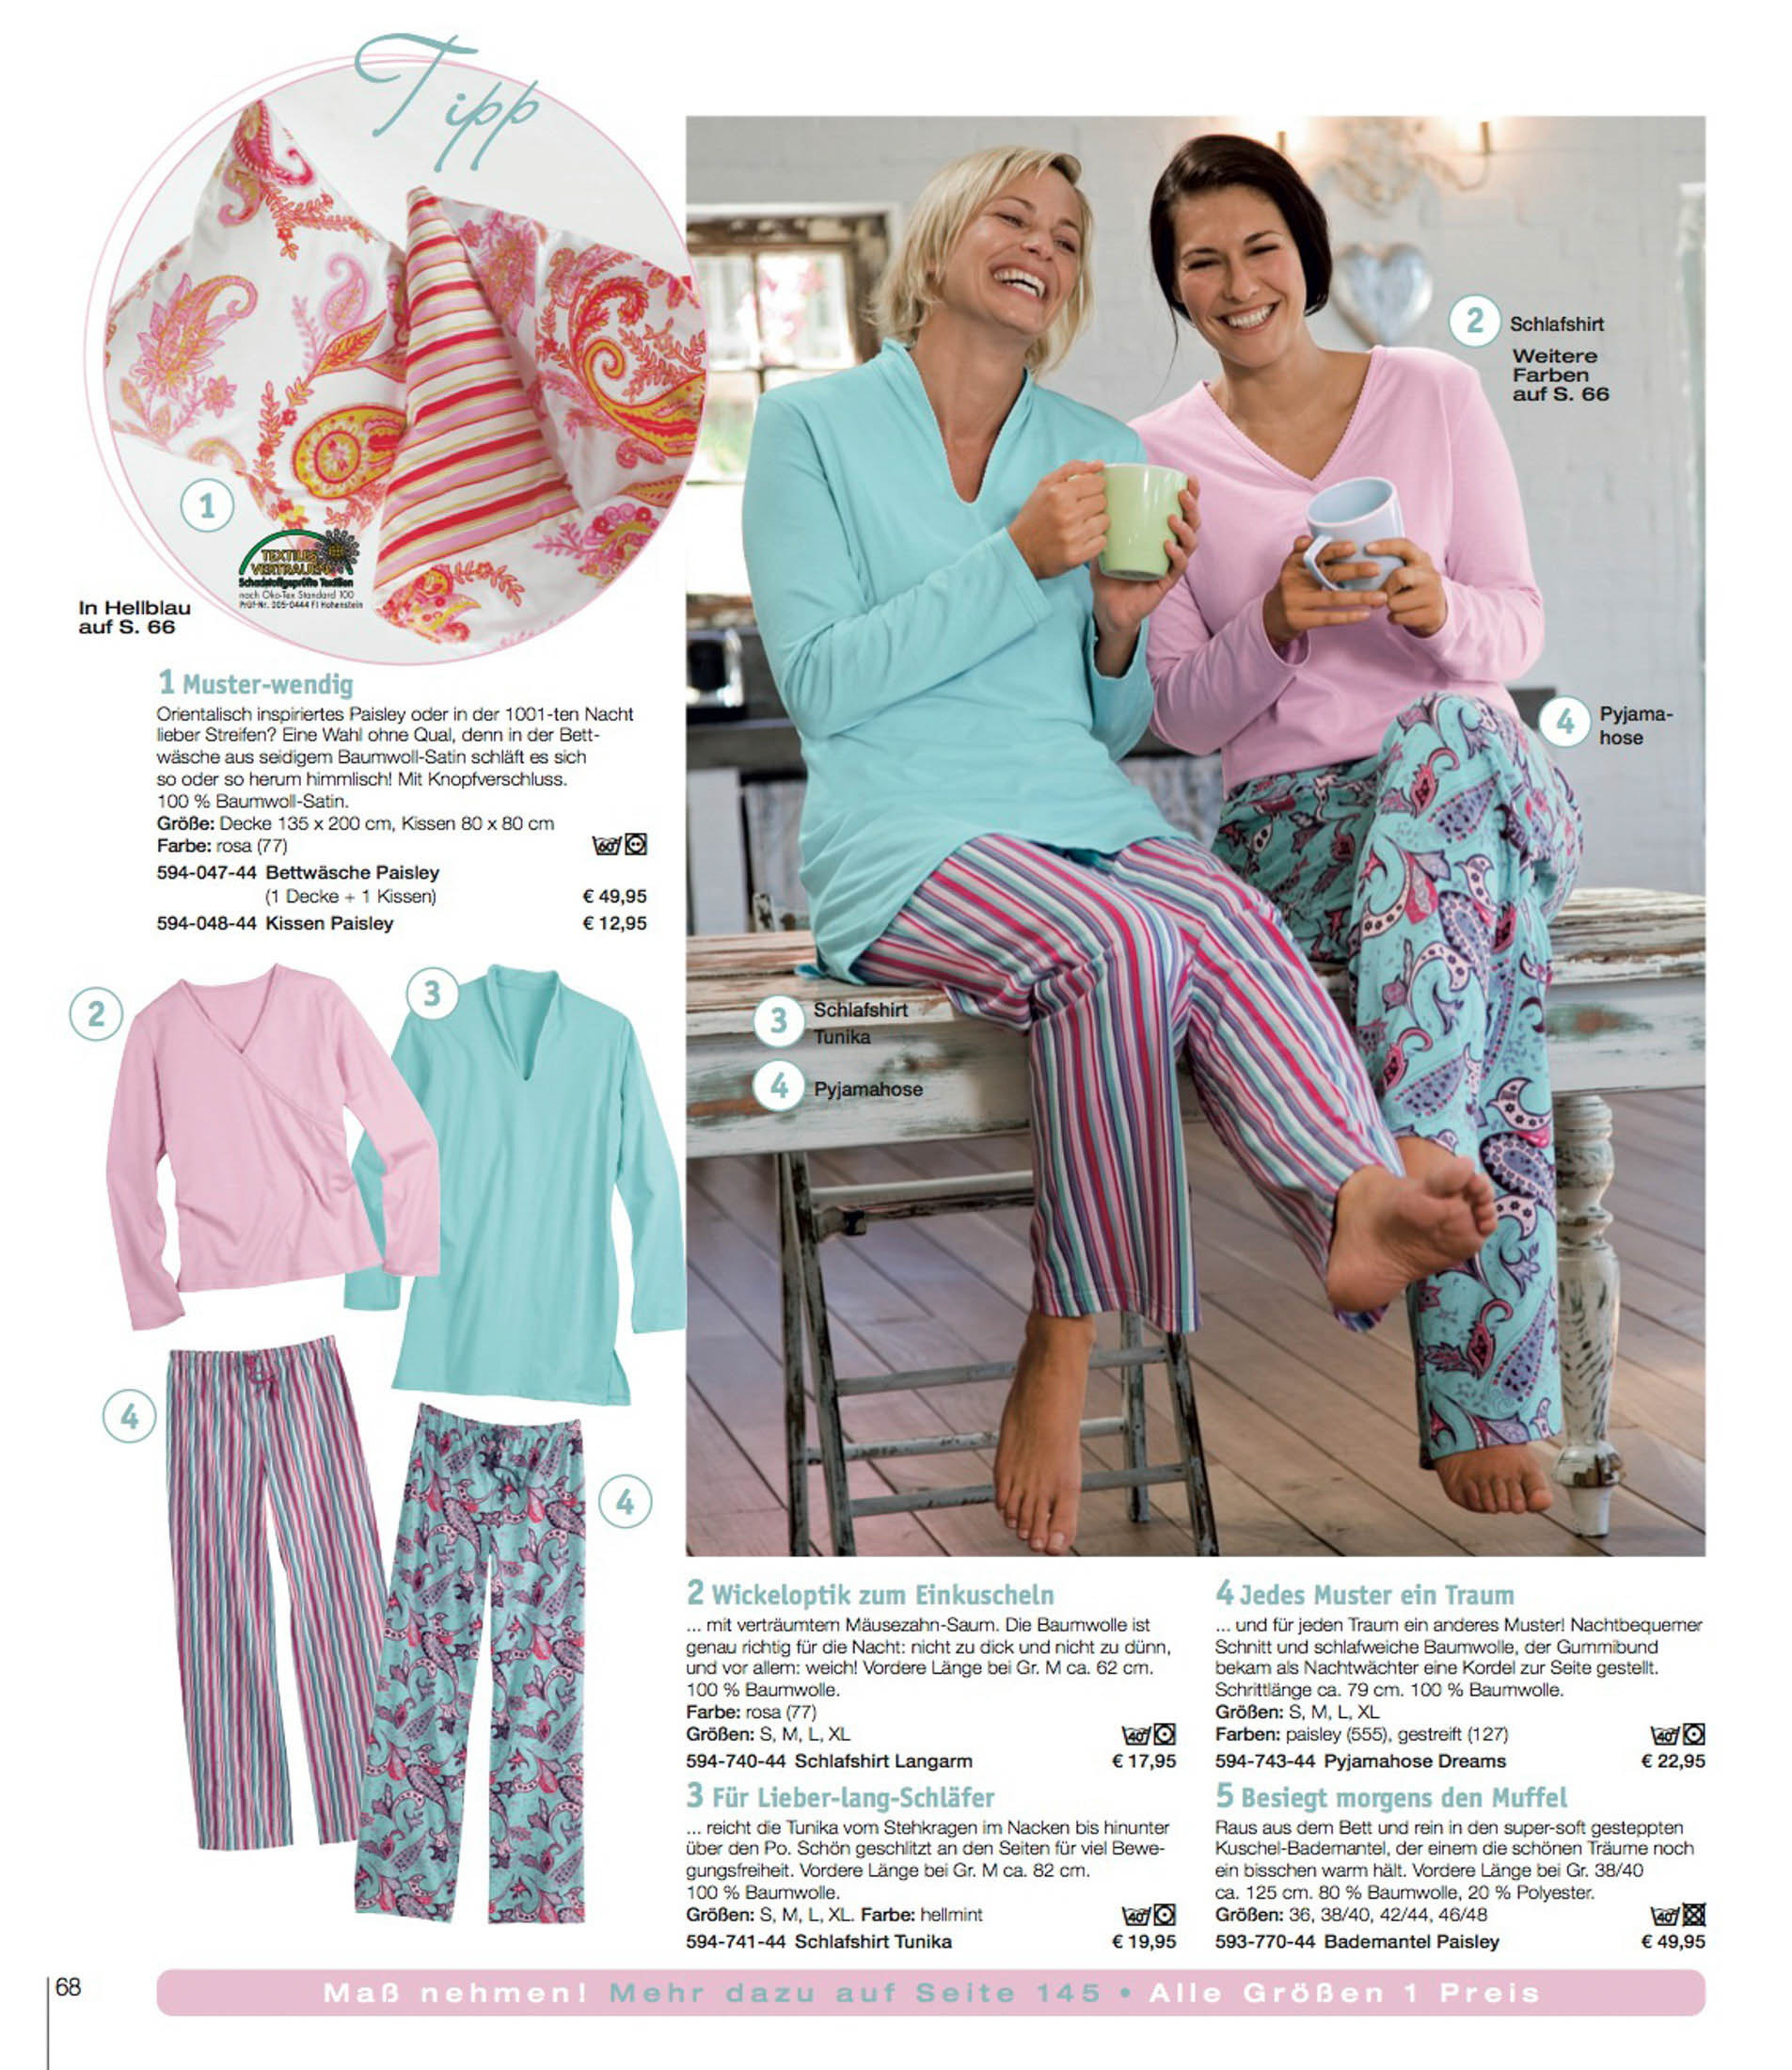 Zwei Frauen im Pyjama unterhalten sich entspannt bei einer Tasse Kaffee auf einer Holzveranda. Die eine trägt einen türkisfarbenen, die andere einen rosafarbenen Pyjama, beide mit Blumenmuster. Die Einschübe zeigen Detailansichten der Pyjamadesigns. © Fotografie Tomas Rodriguez